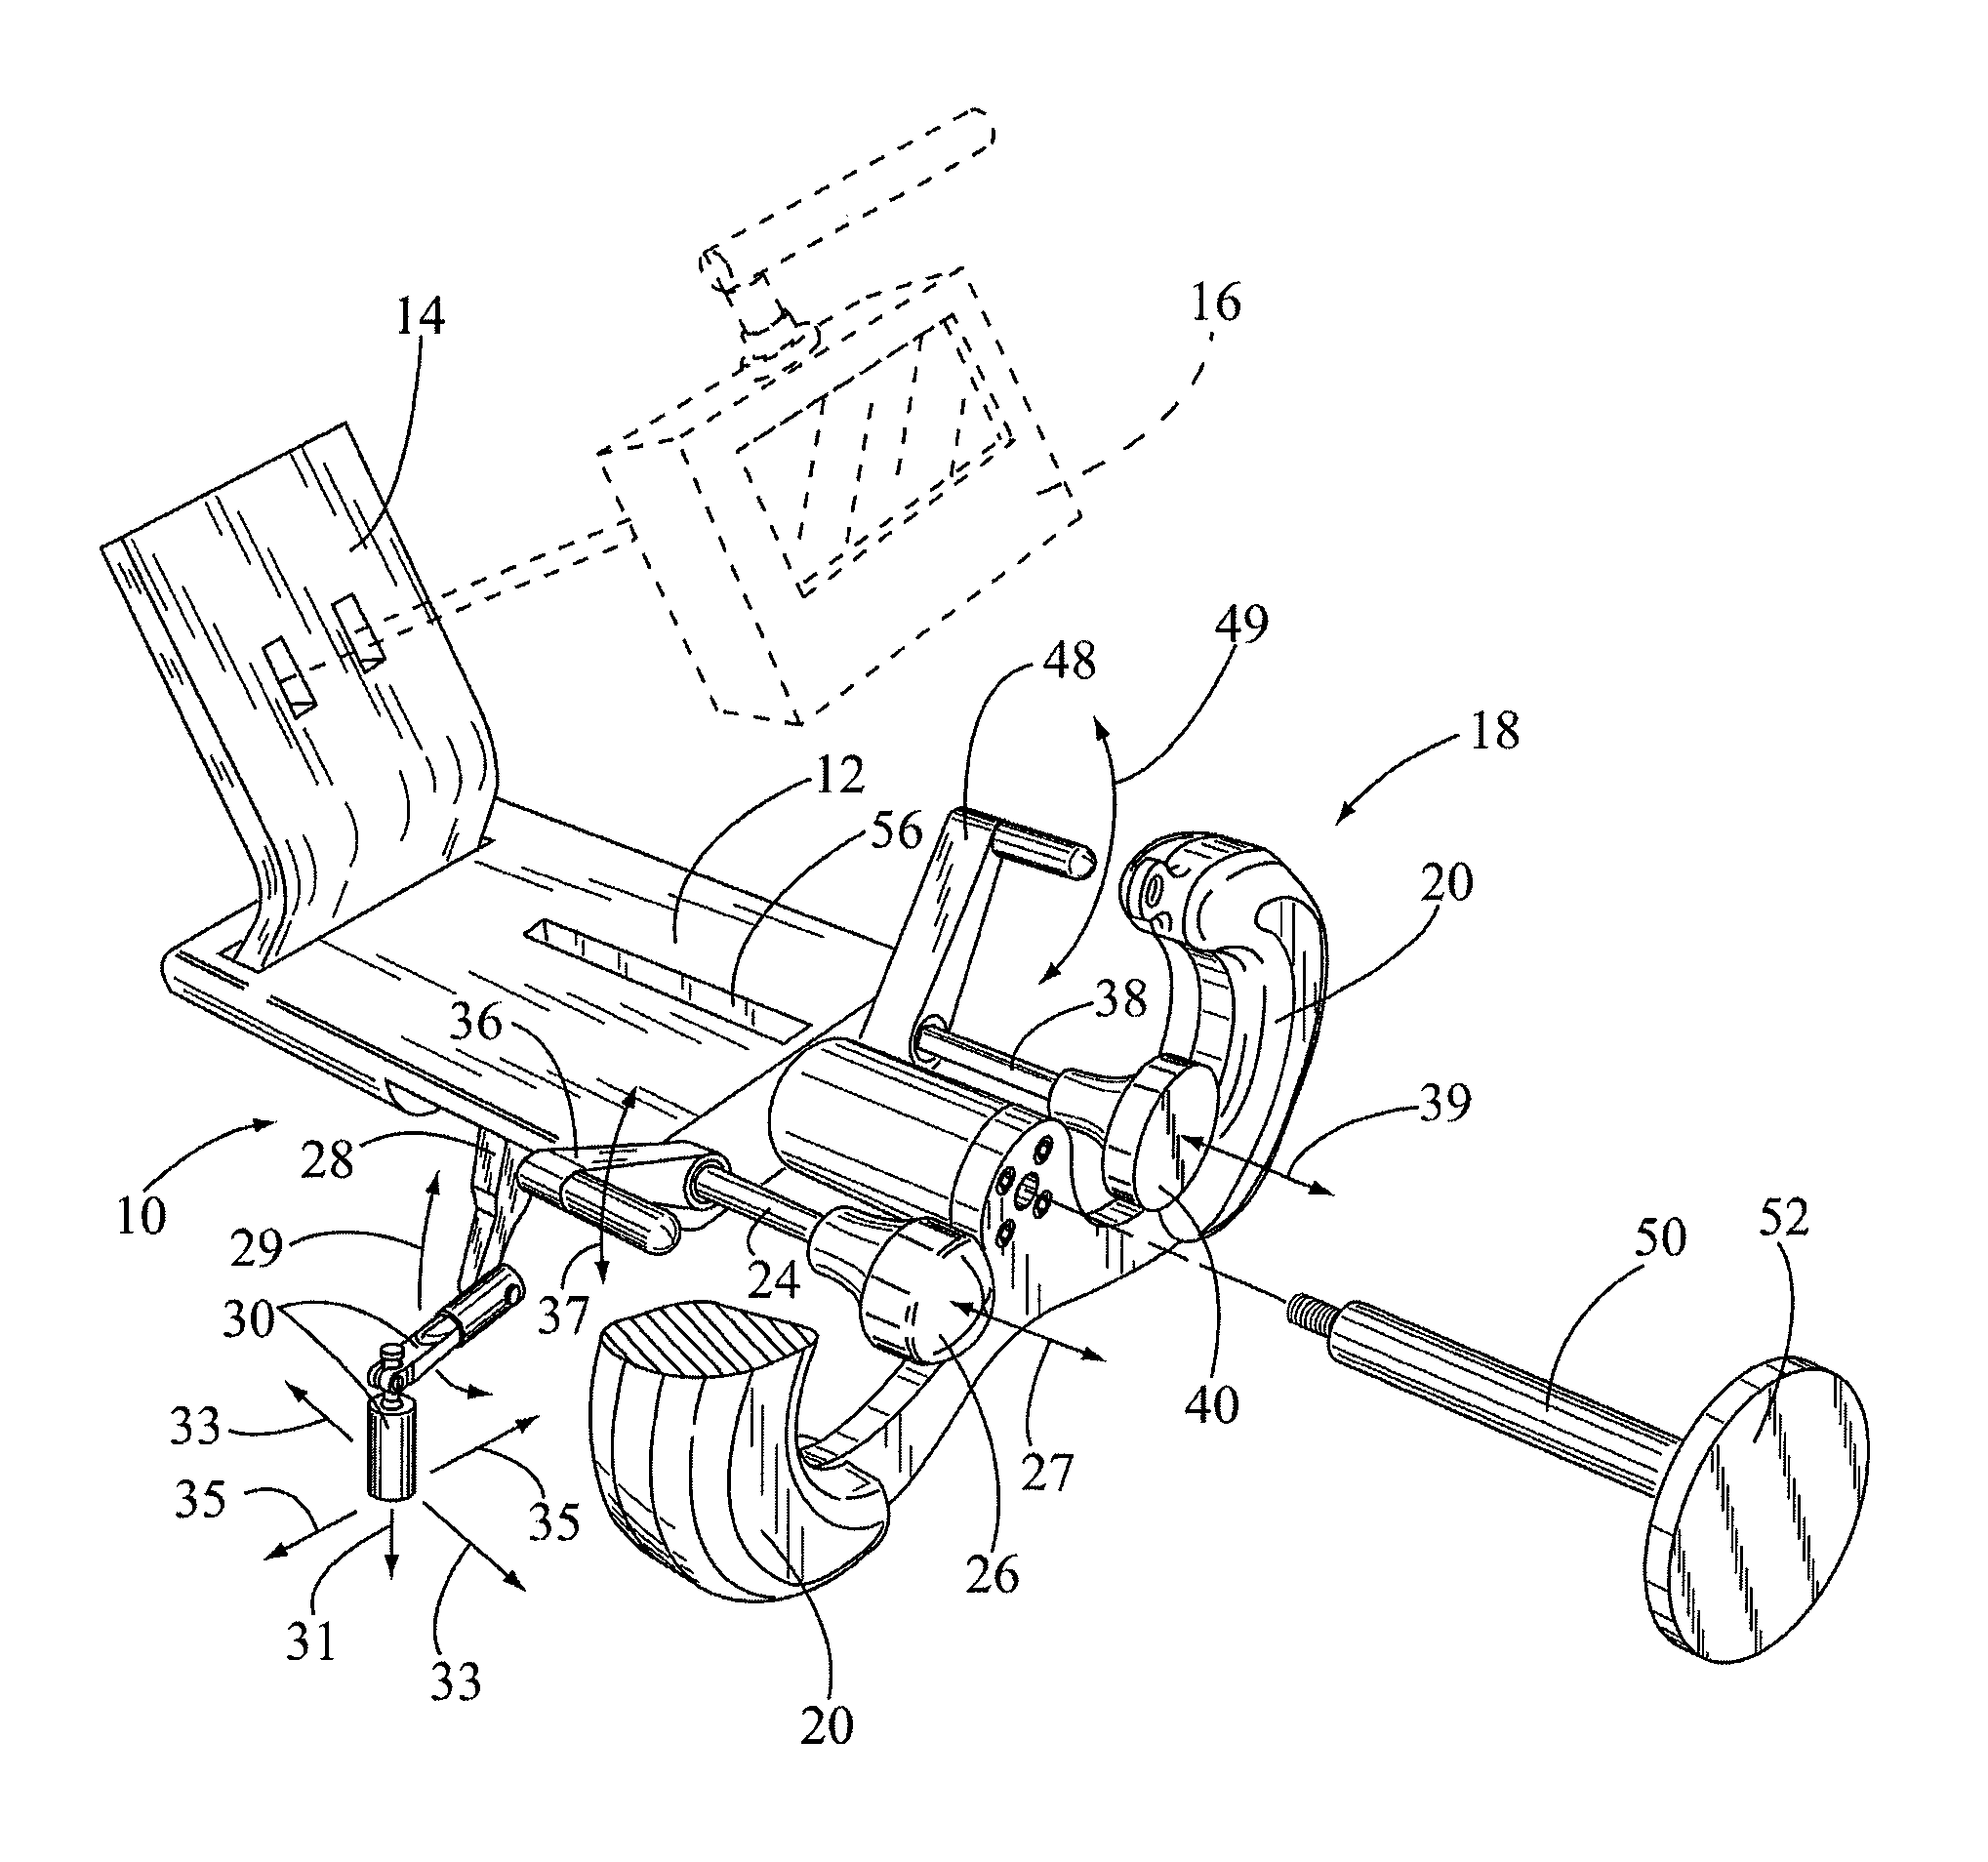 Portable cockpit yoke assembly